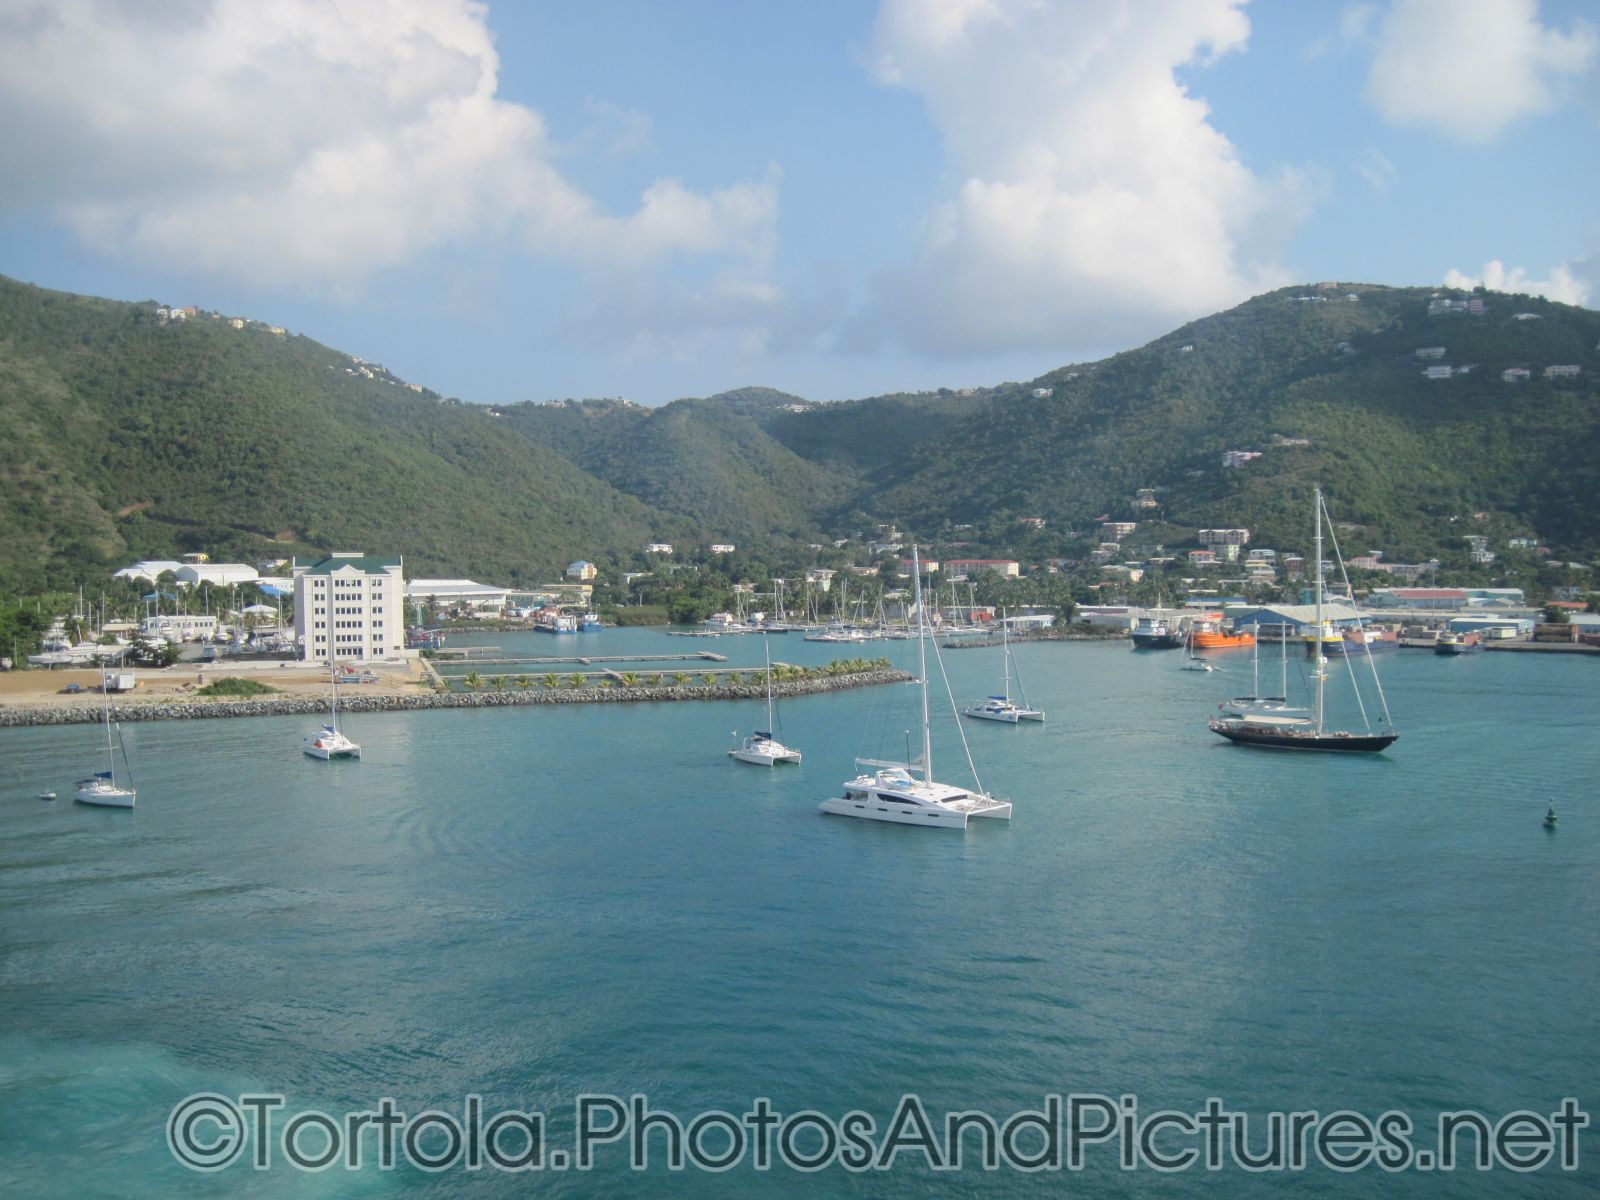 Hotel and sail boats at Tortola cruise port as viewed from catamaran.jpg
